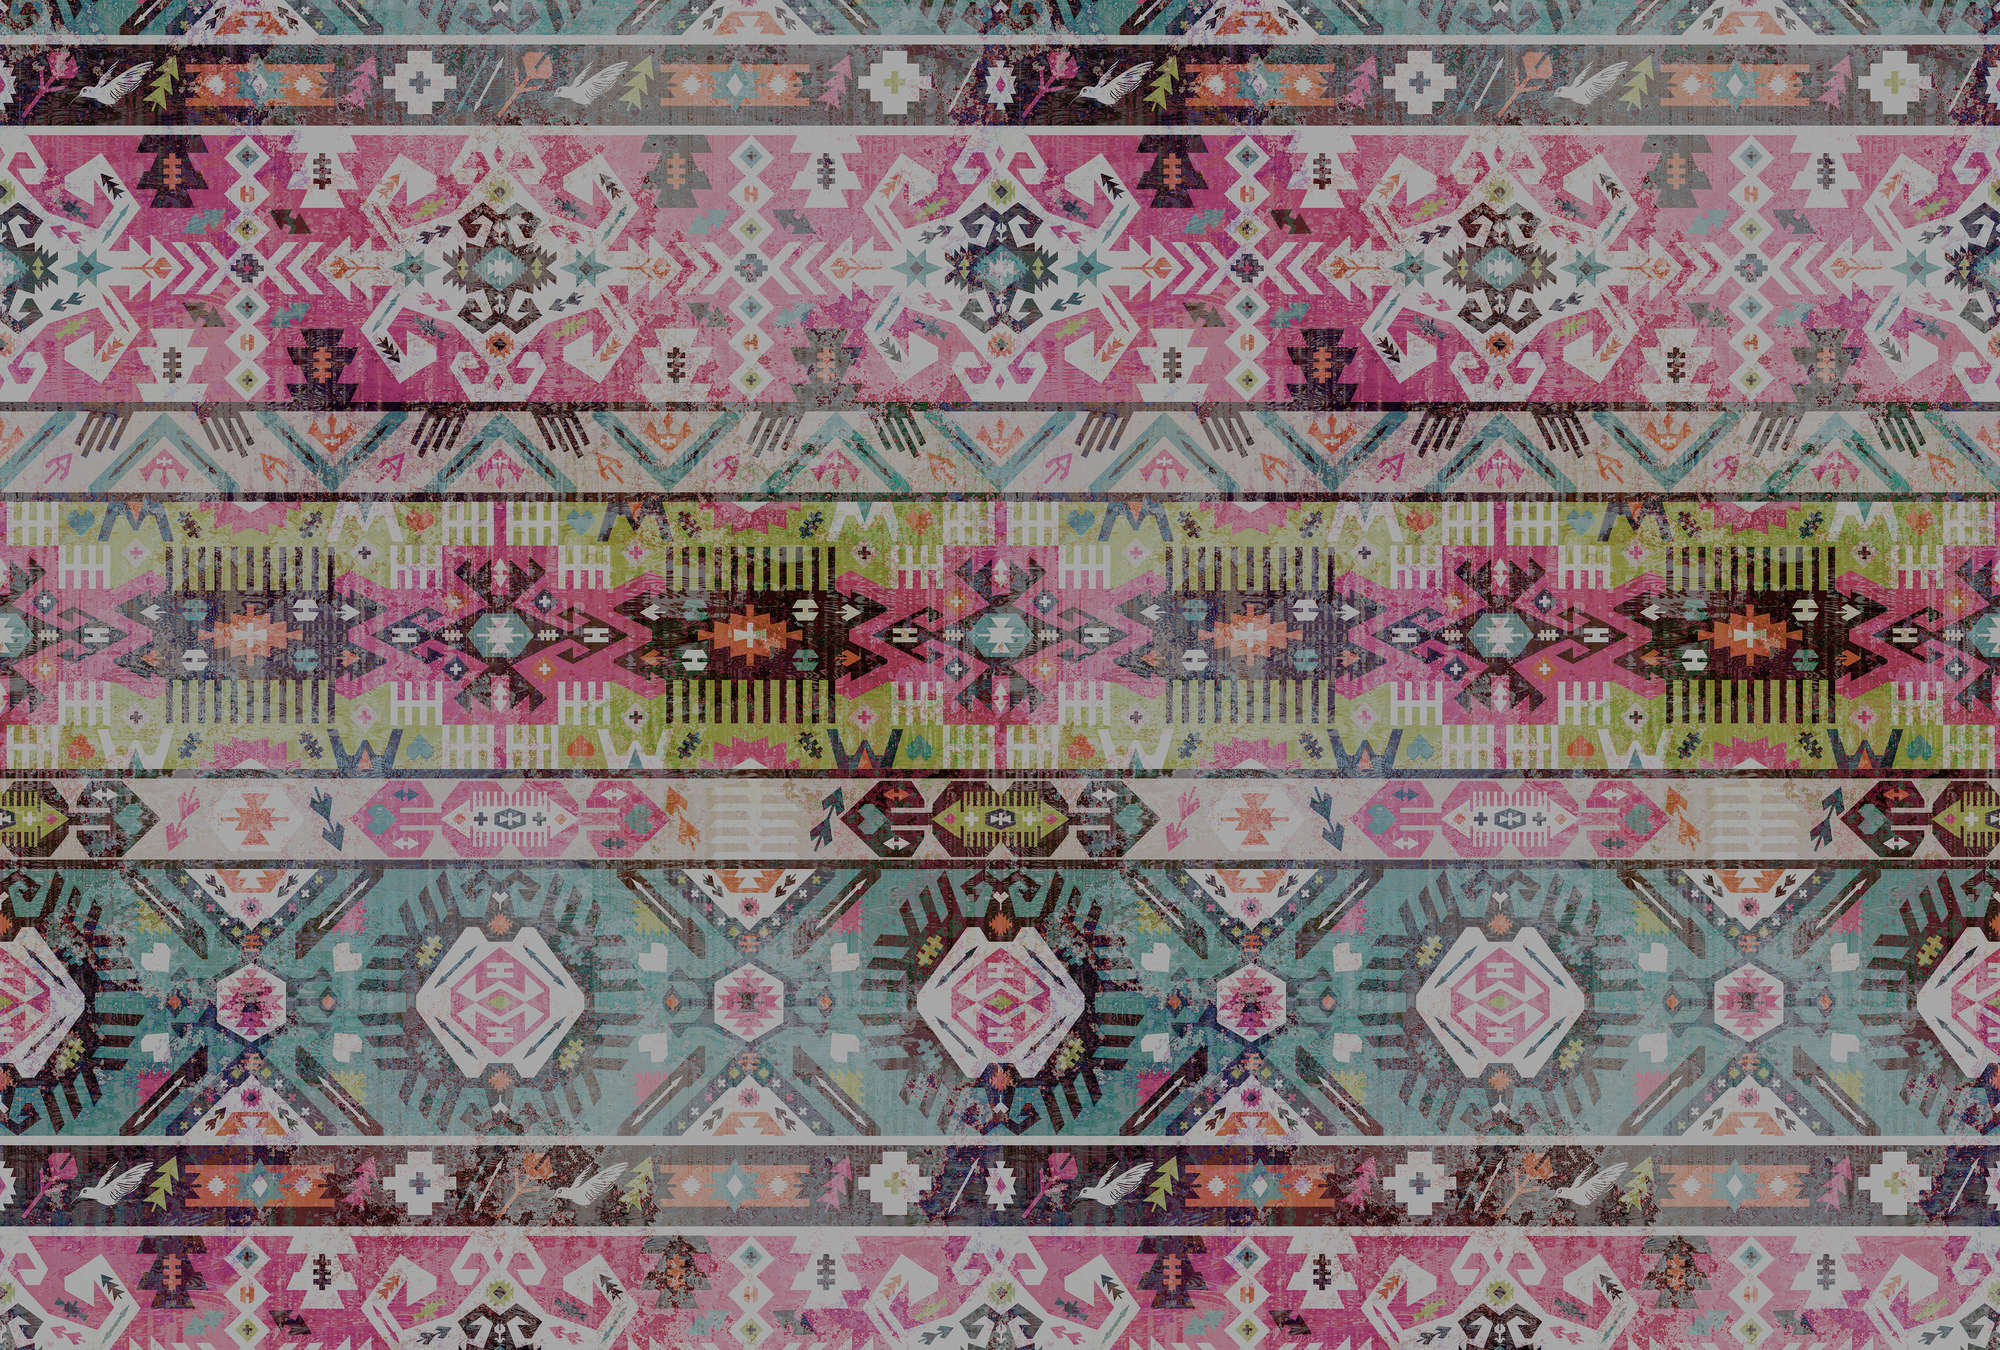             Fototapete Ethno-Textilmuster, geometrisch – Rosa, Grün
        